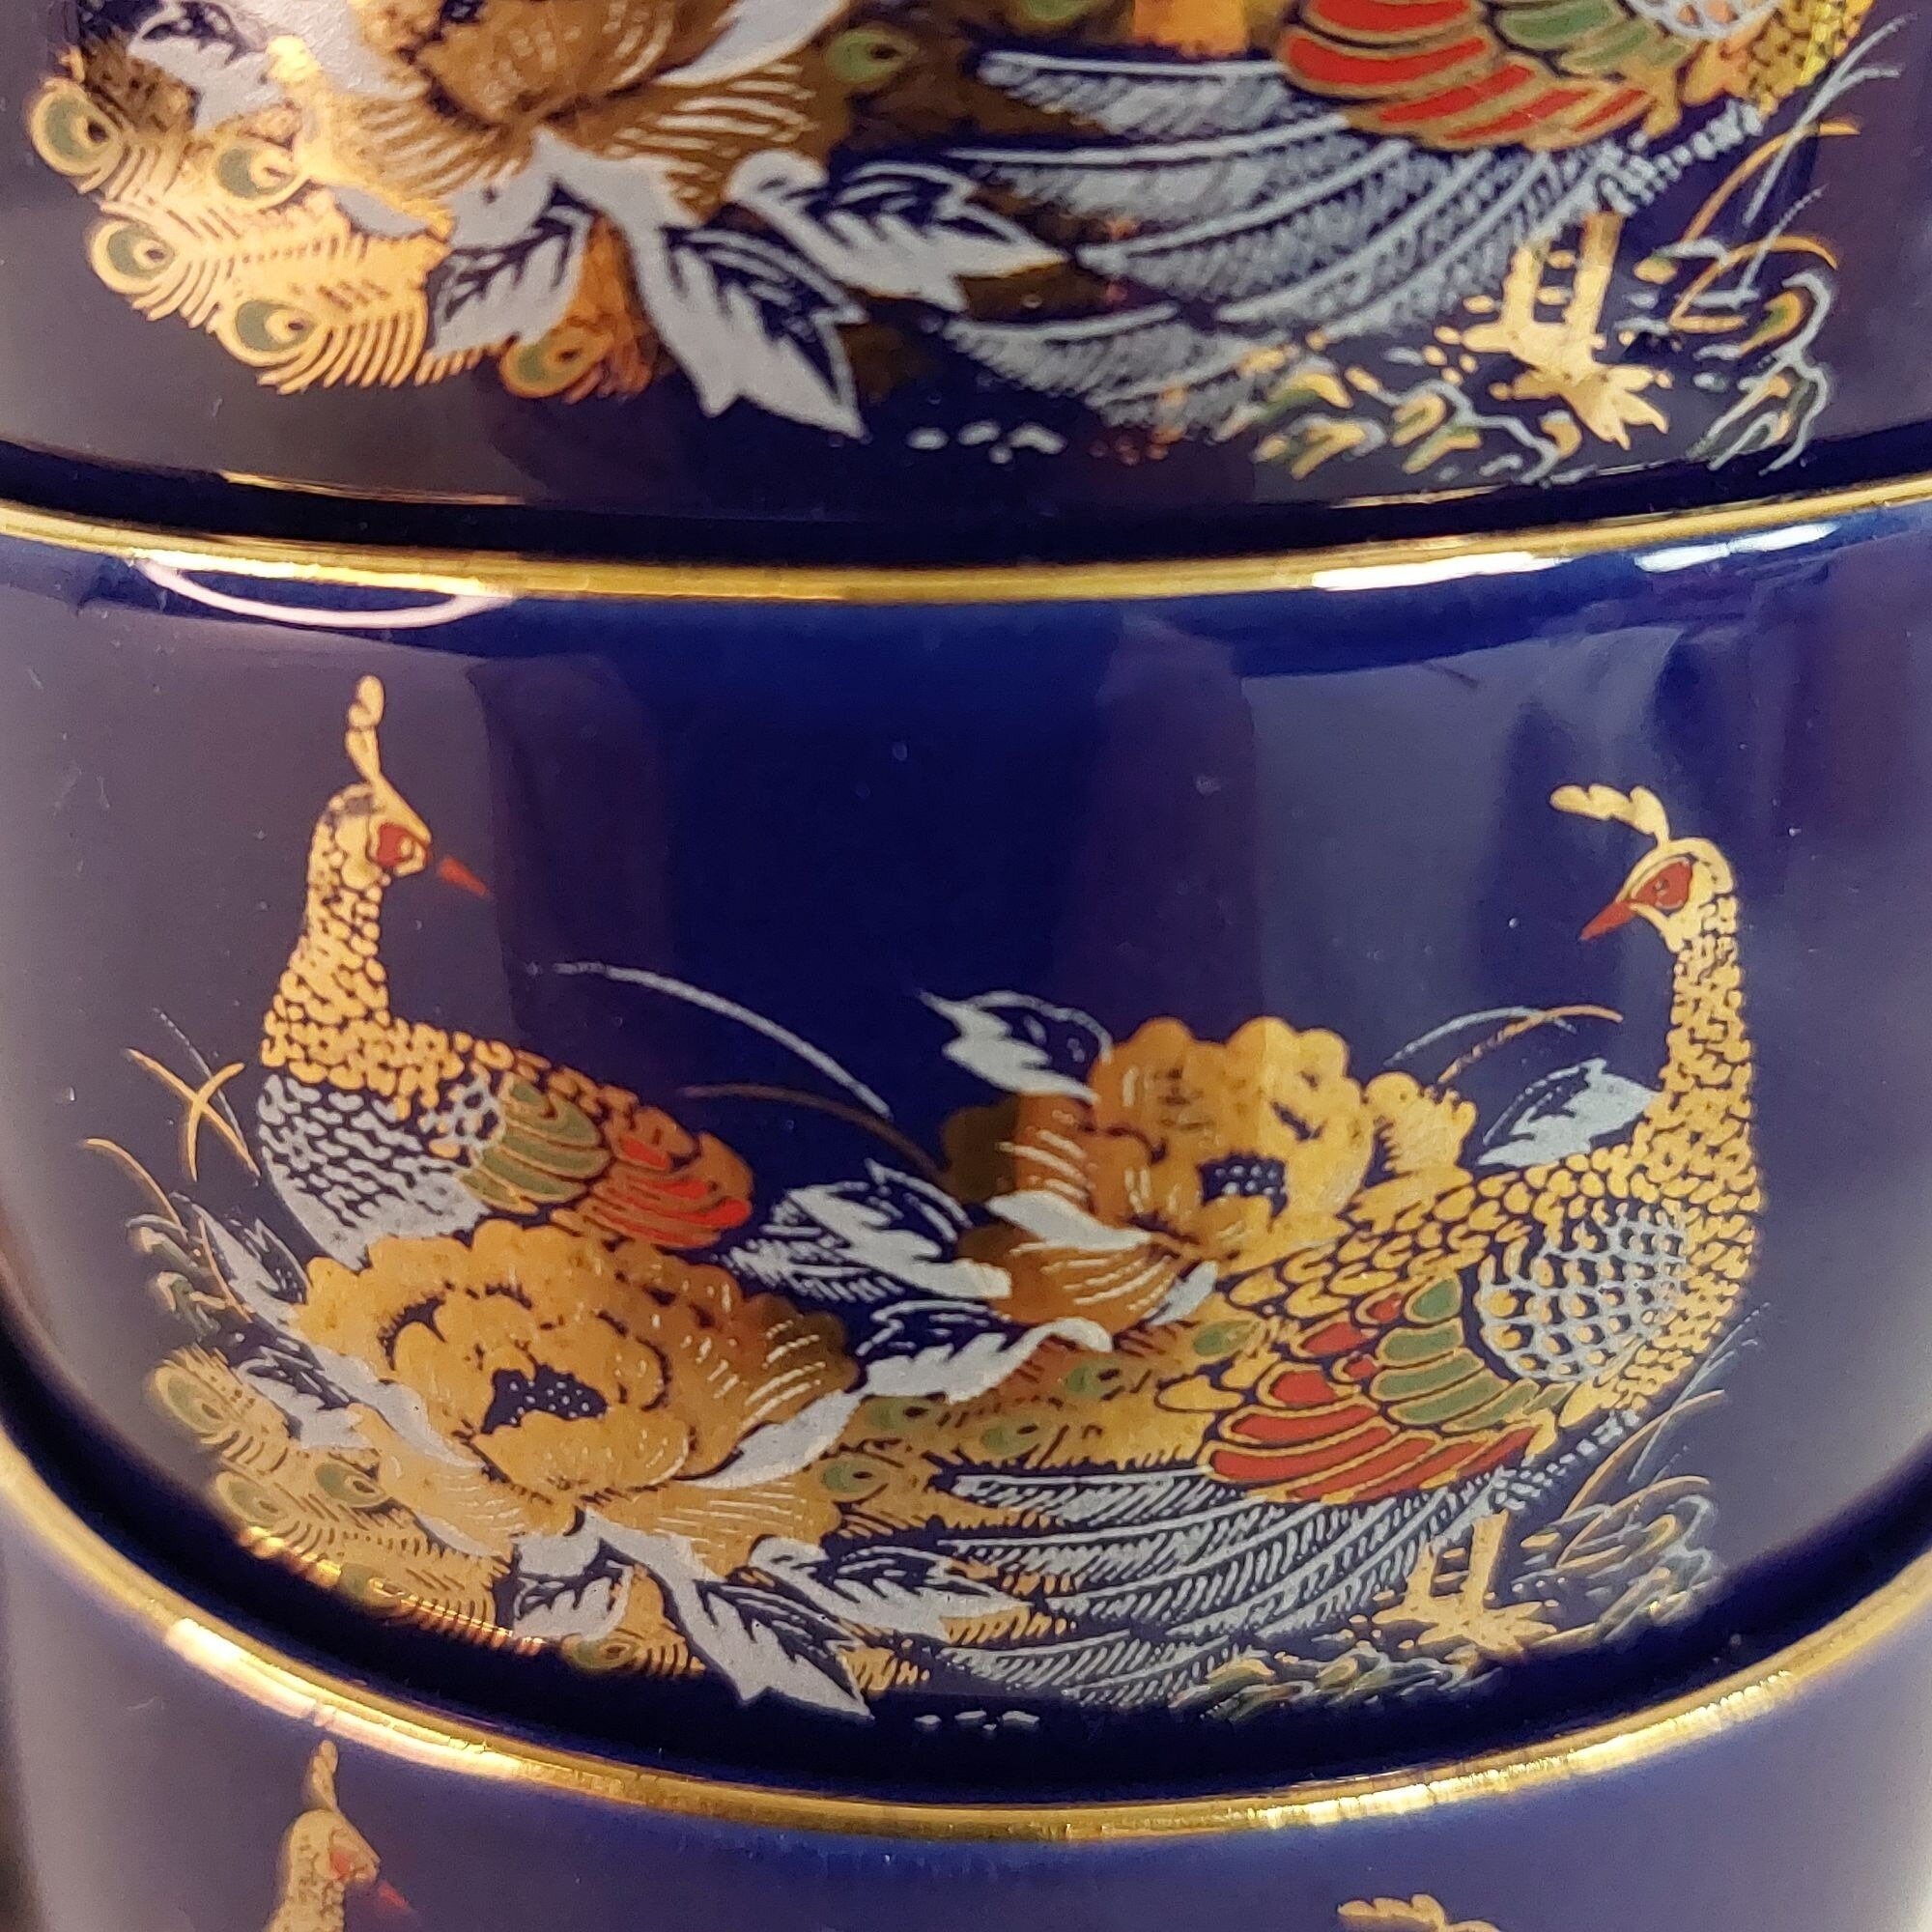 Asian Tea Set Teapot and 4 cups Cobalt Blue Ceramic Vintage Pheasants Floral